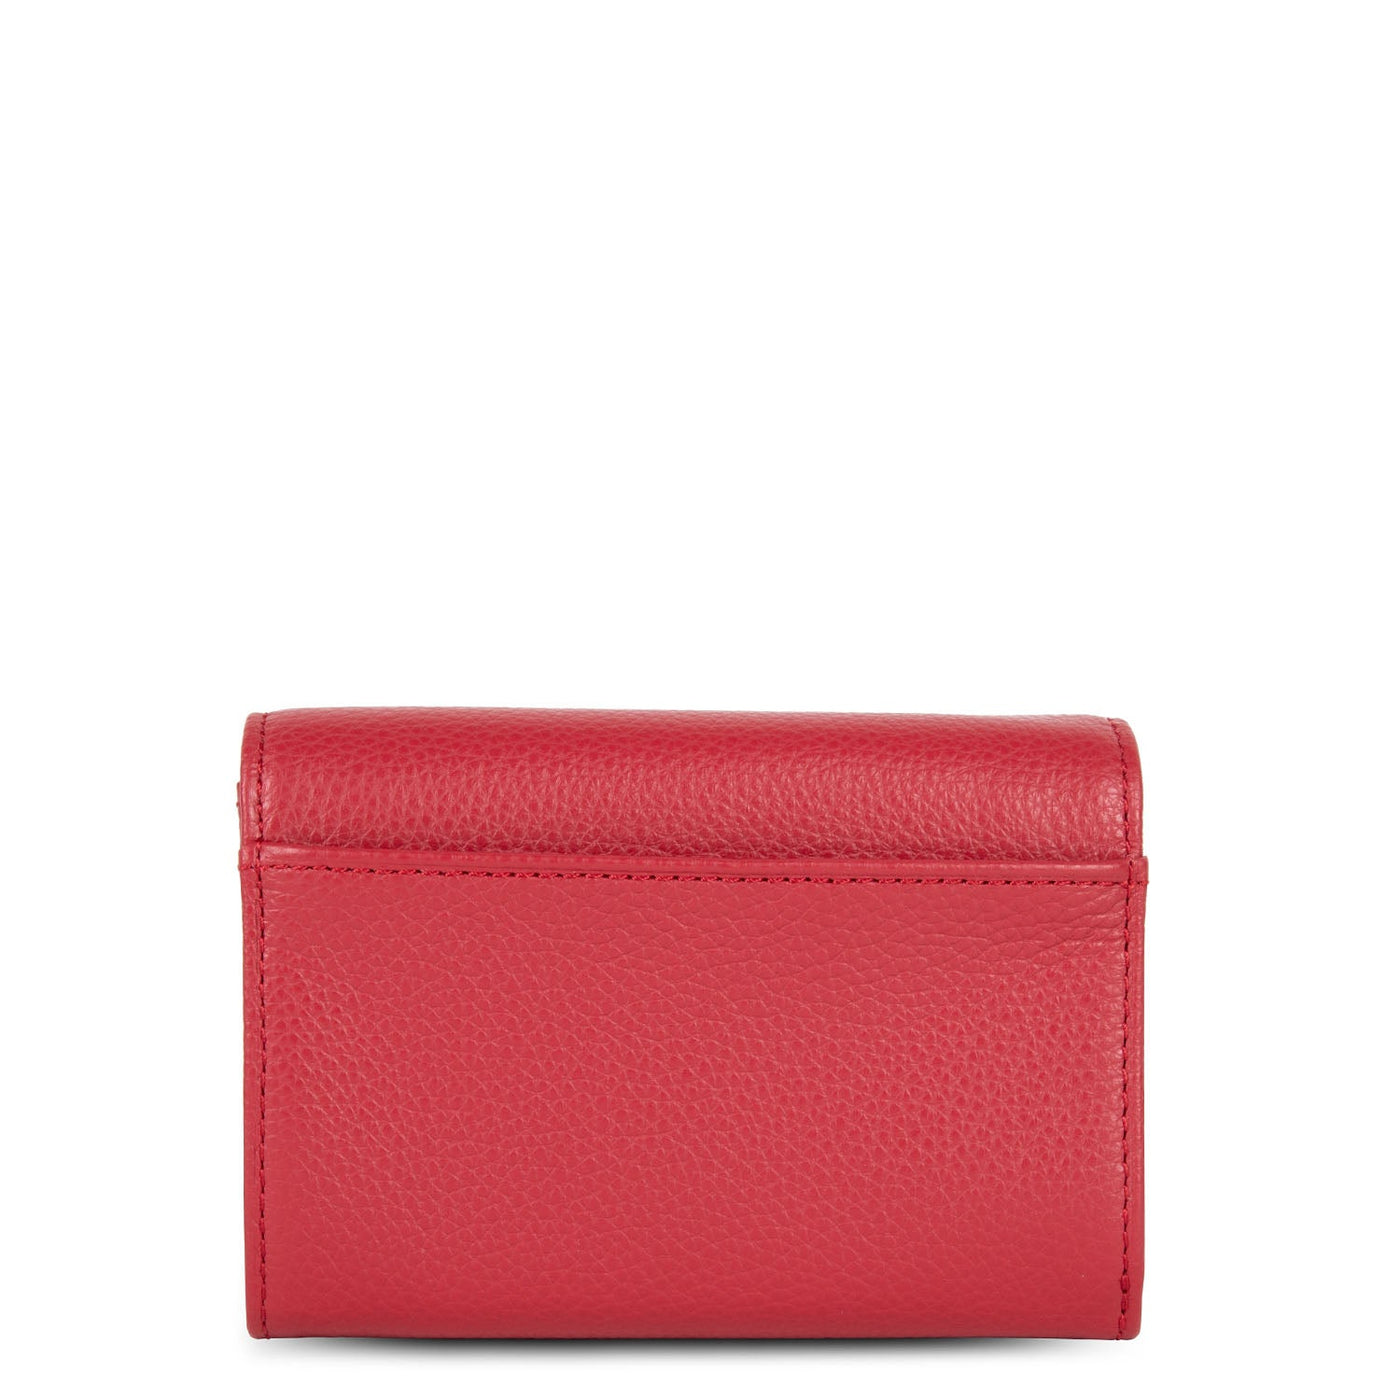 wallet - foulonné pm #couleur_rouge